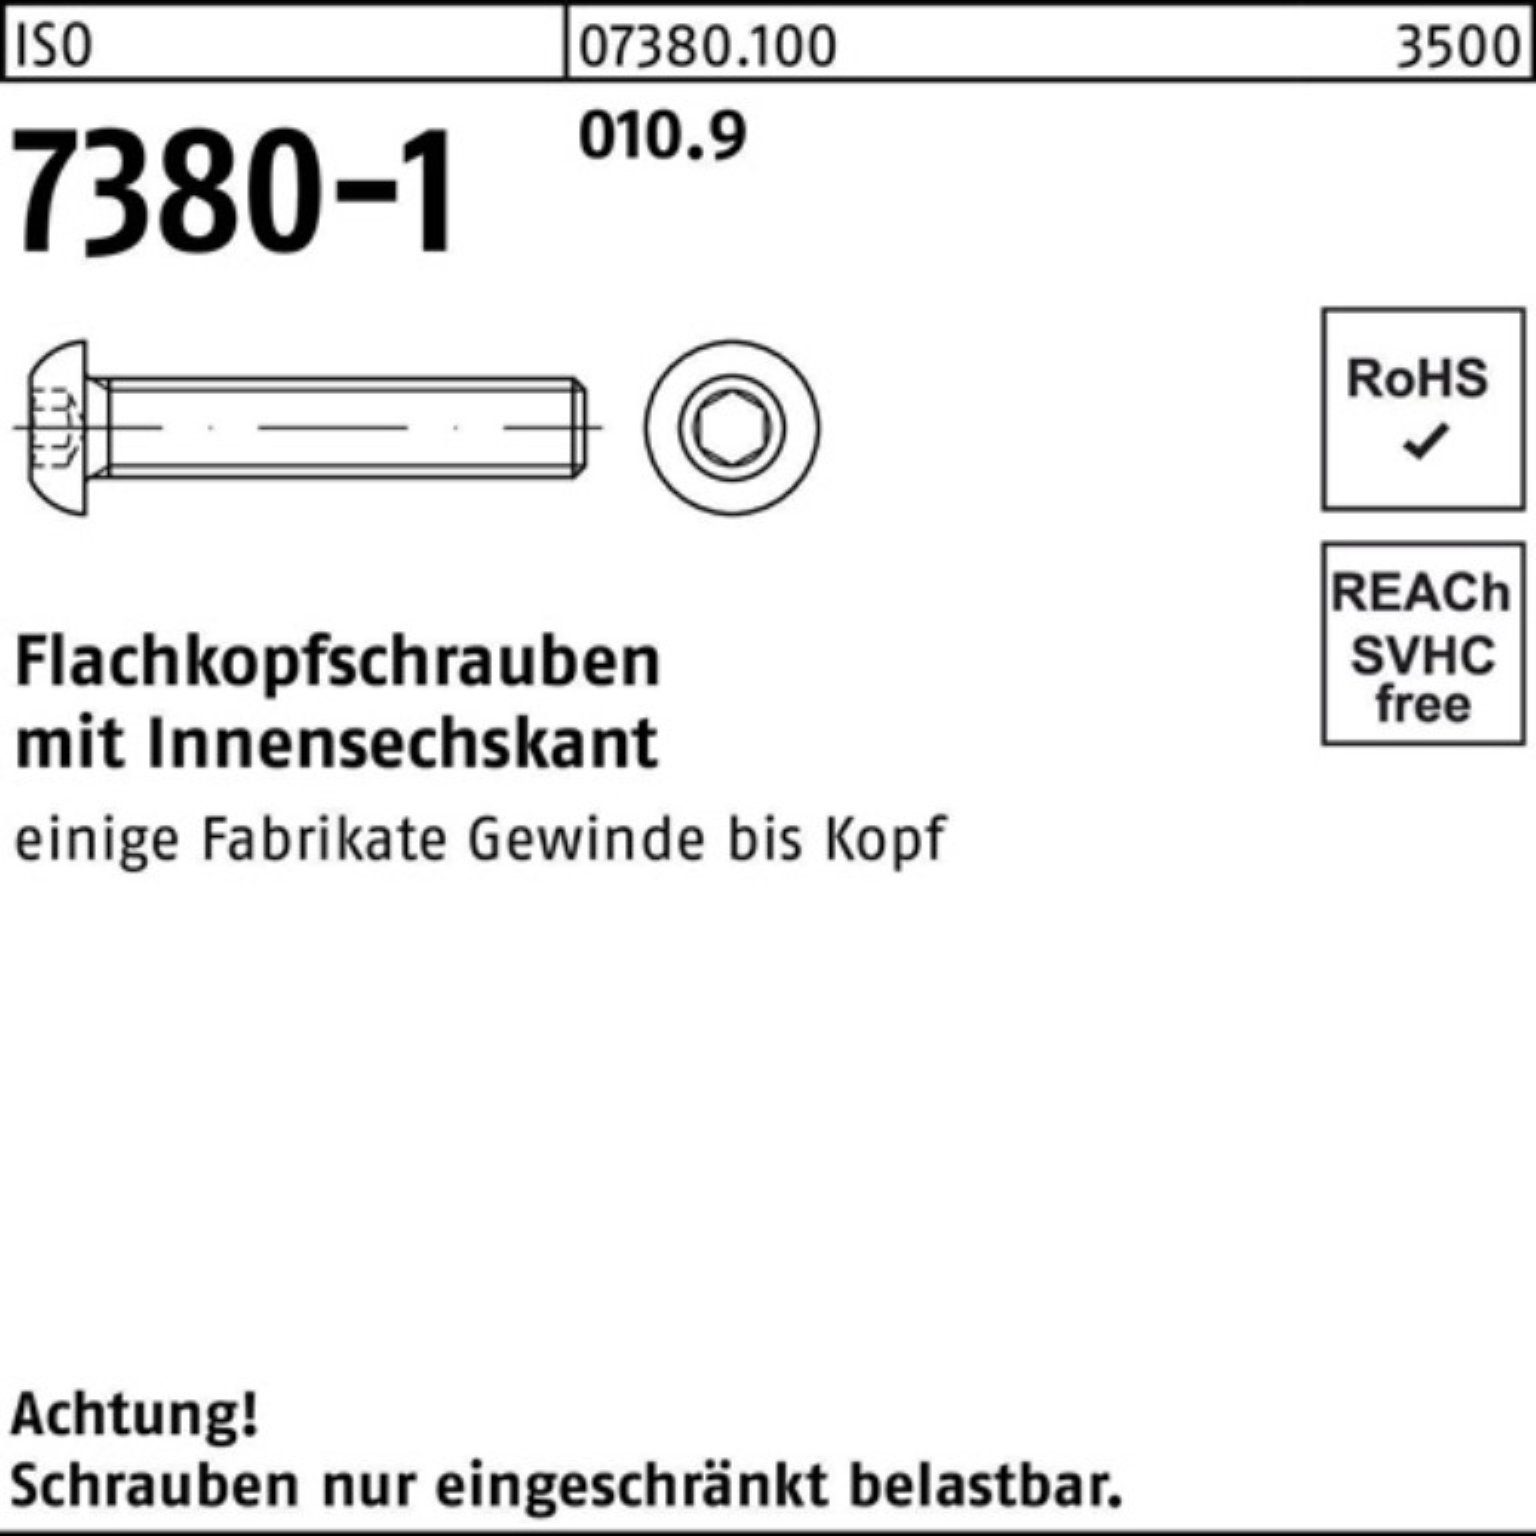 Flachkopfschraube Pack ISO 200 25 M10x Reyher St Innen-6kt 7380-1 010.9 Schraube 200er